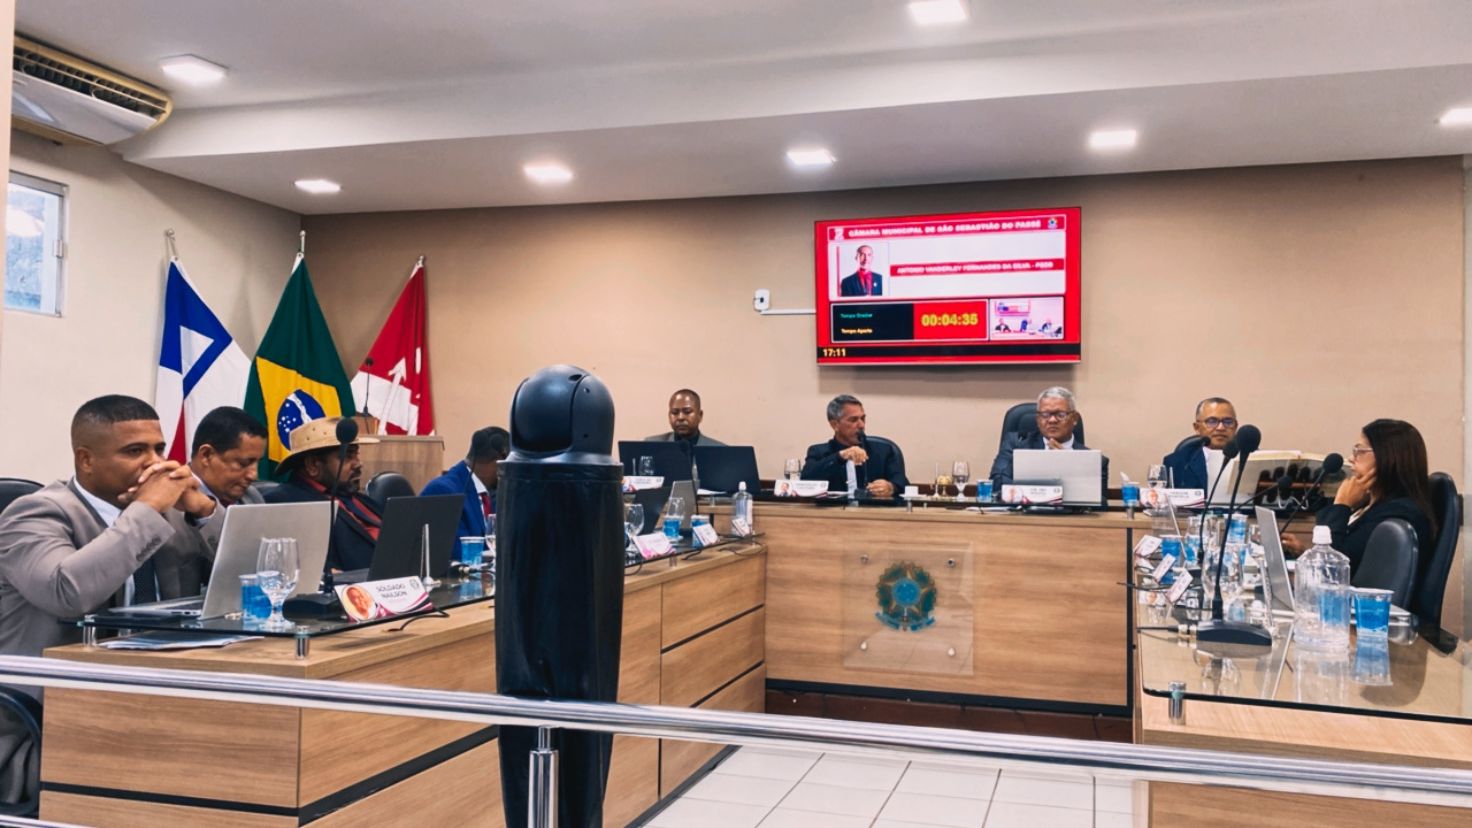 Câmara de Vereadores de São Sebastião do Passé realiza a sétima sessão ordinária com pauta abrangente